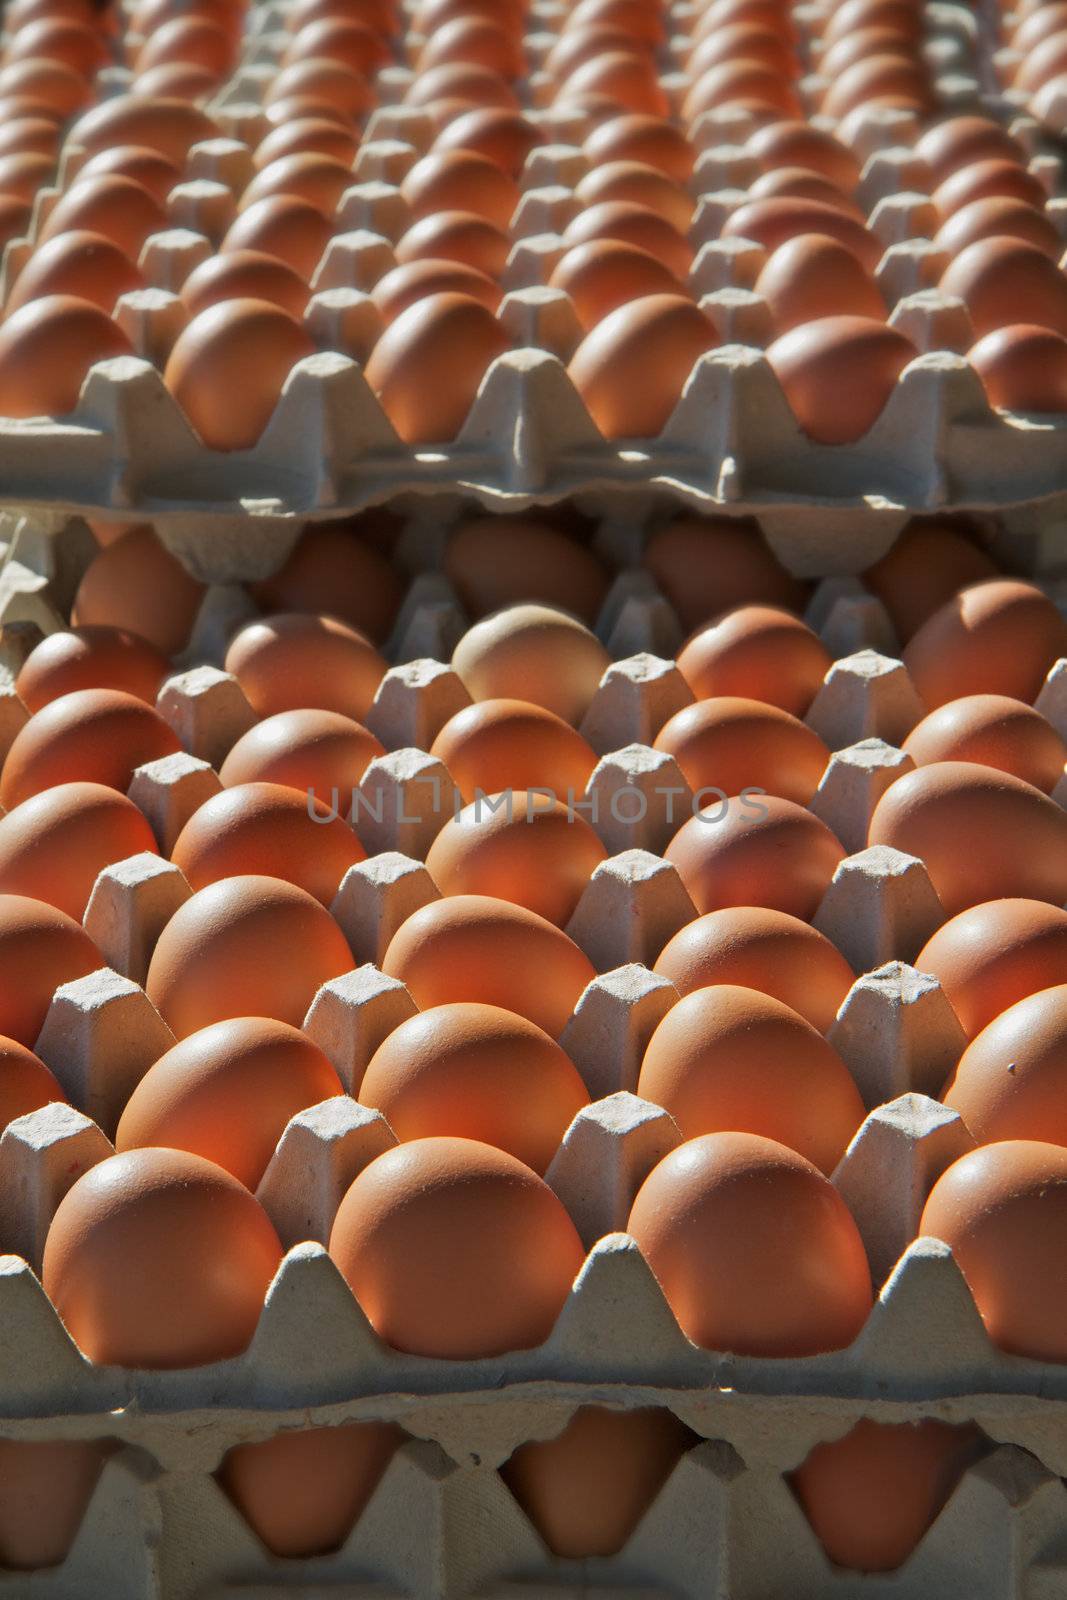 Brown Eggs by bobkeenan